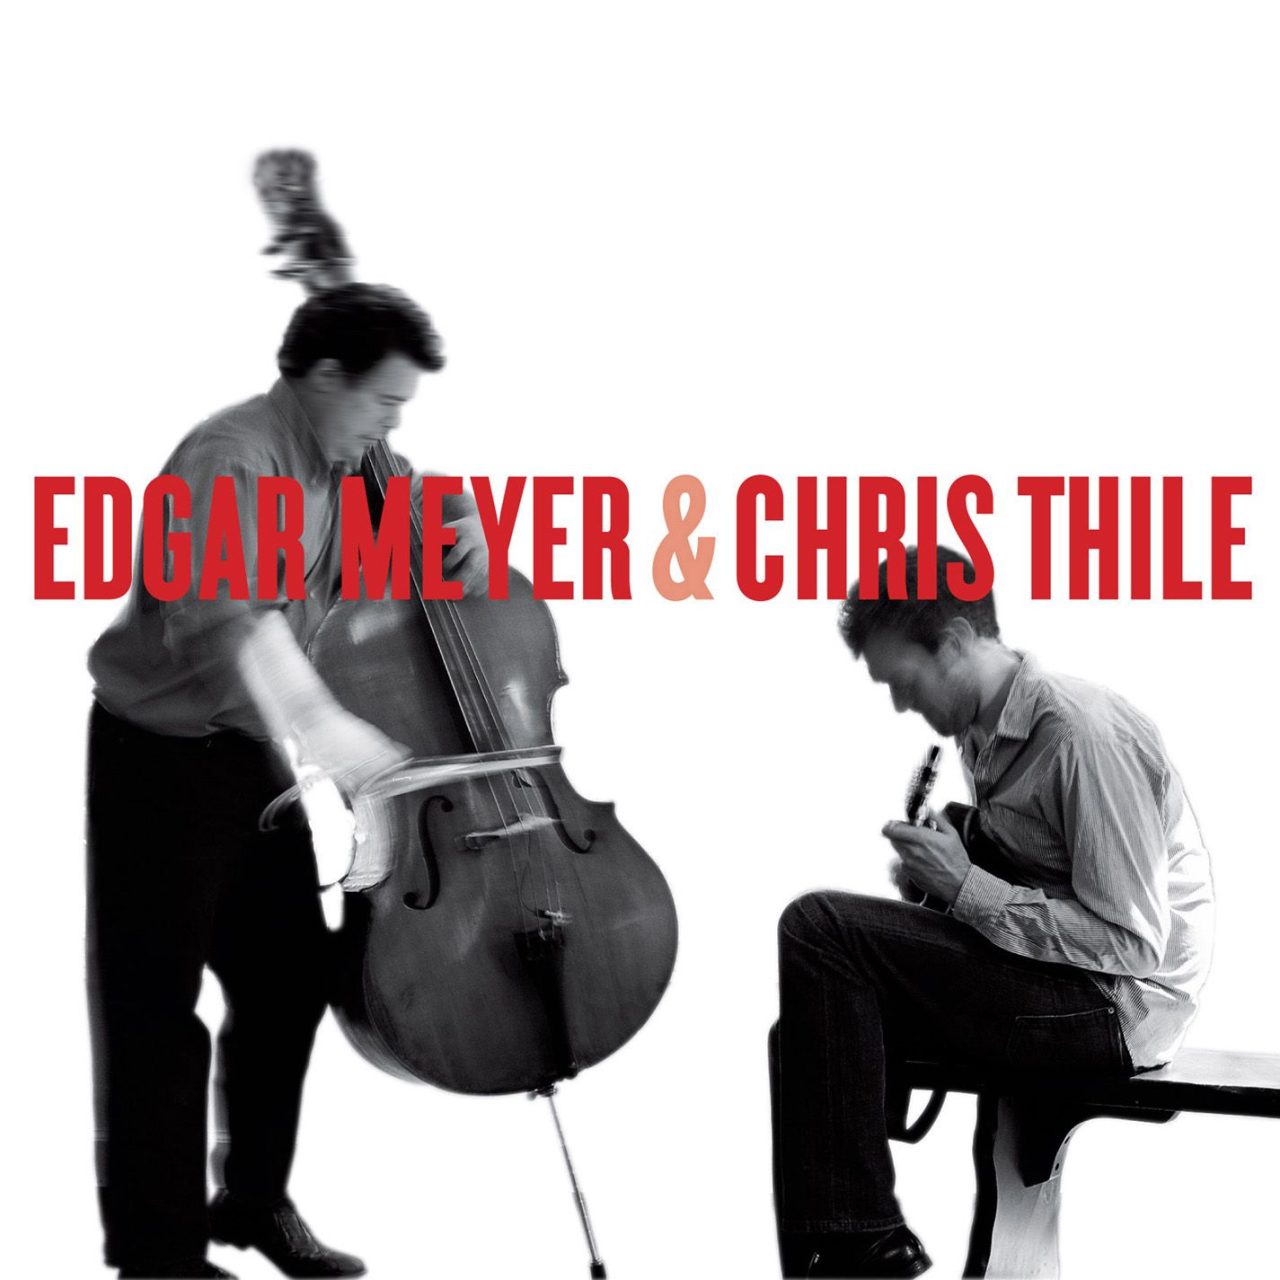 Edgar Meyer & Chris Thile - Edgar Meyer & Chris Thile cover album